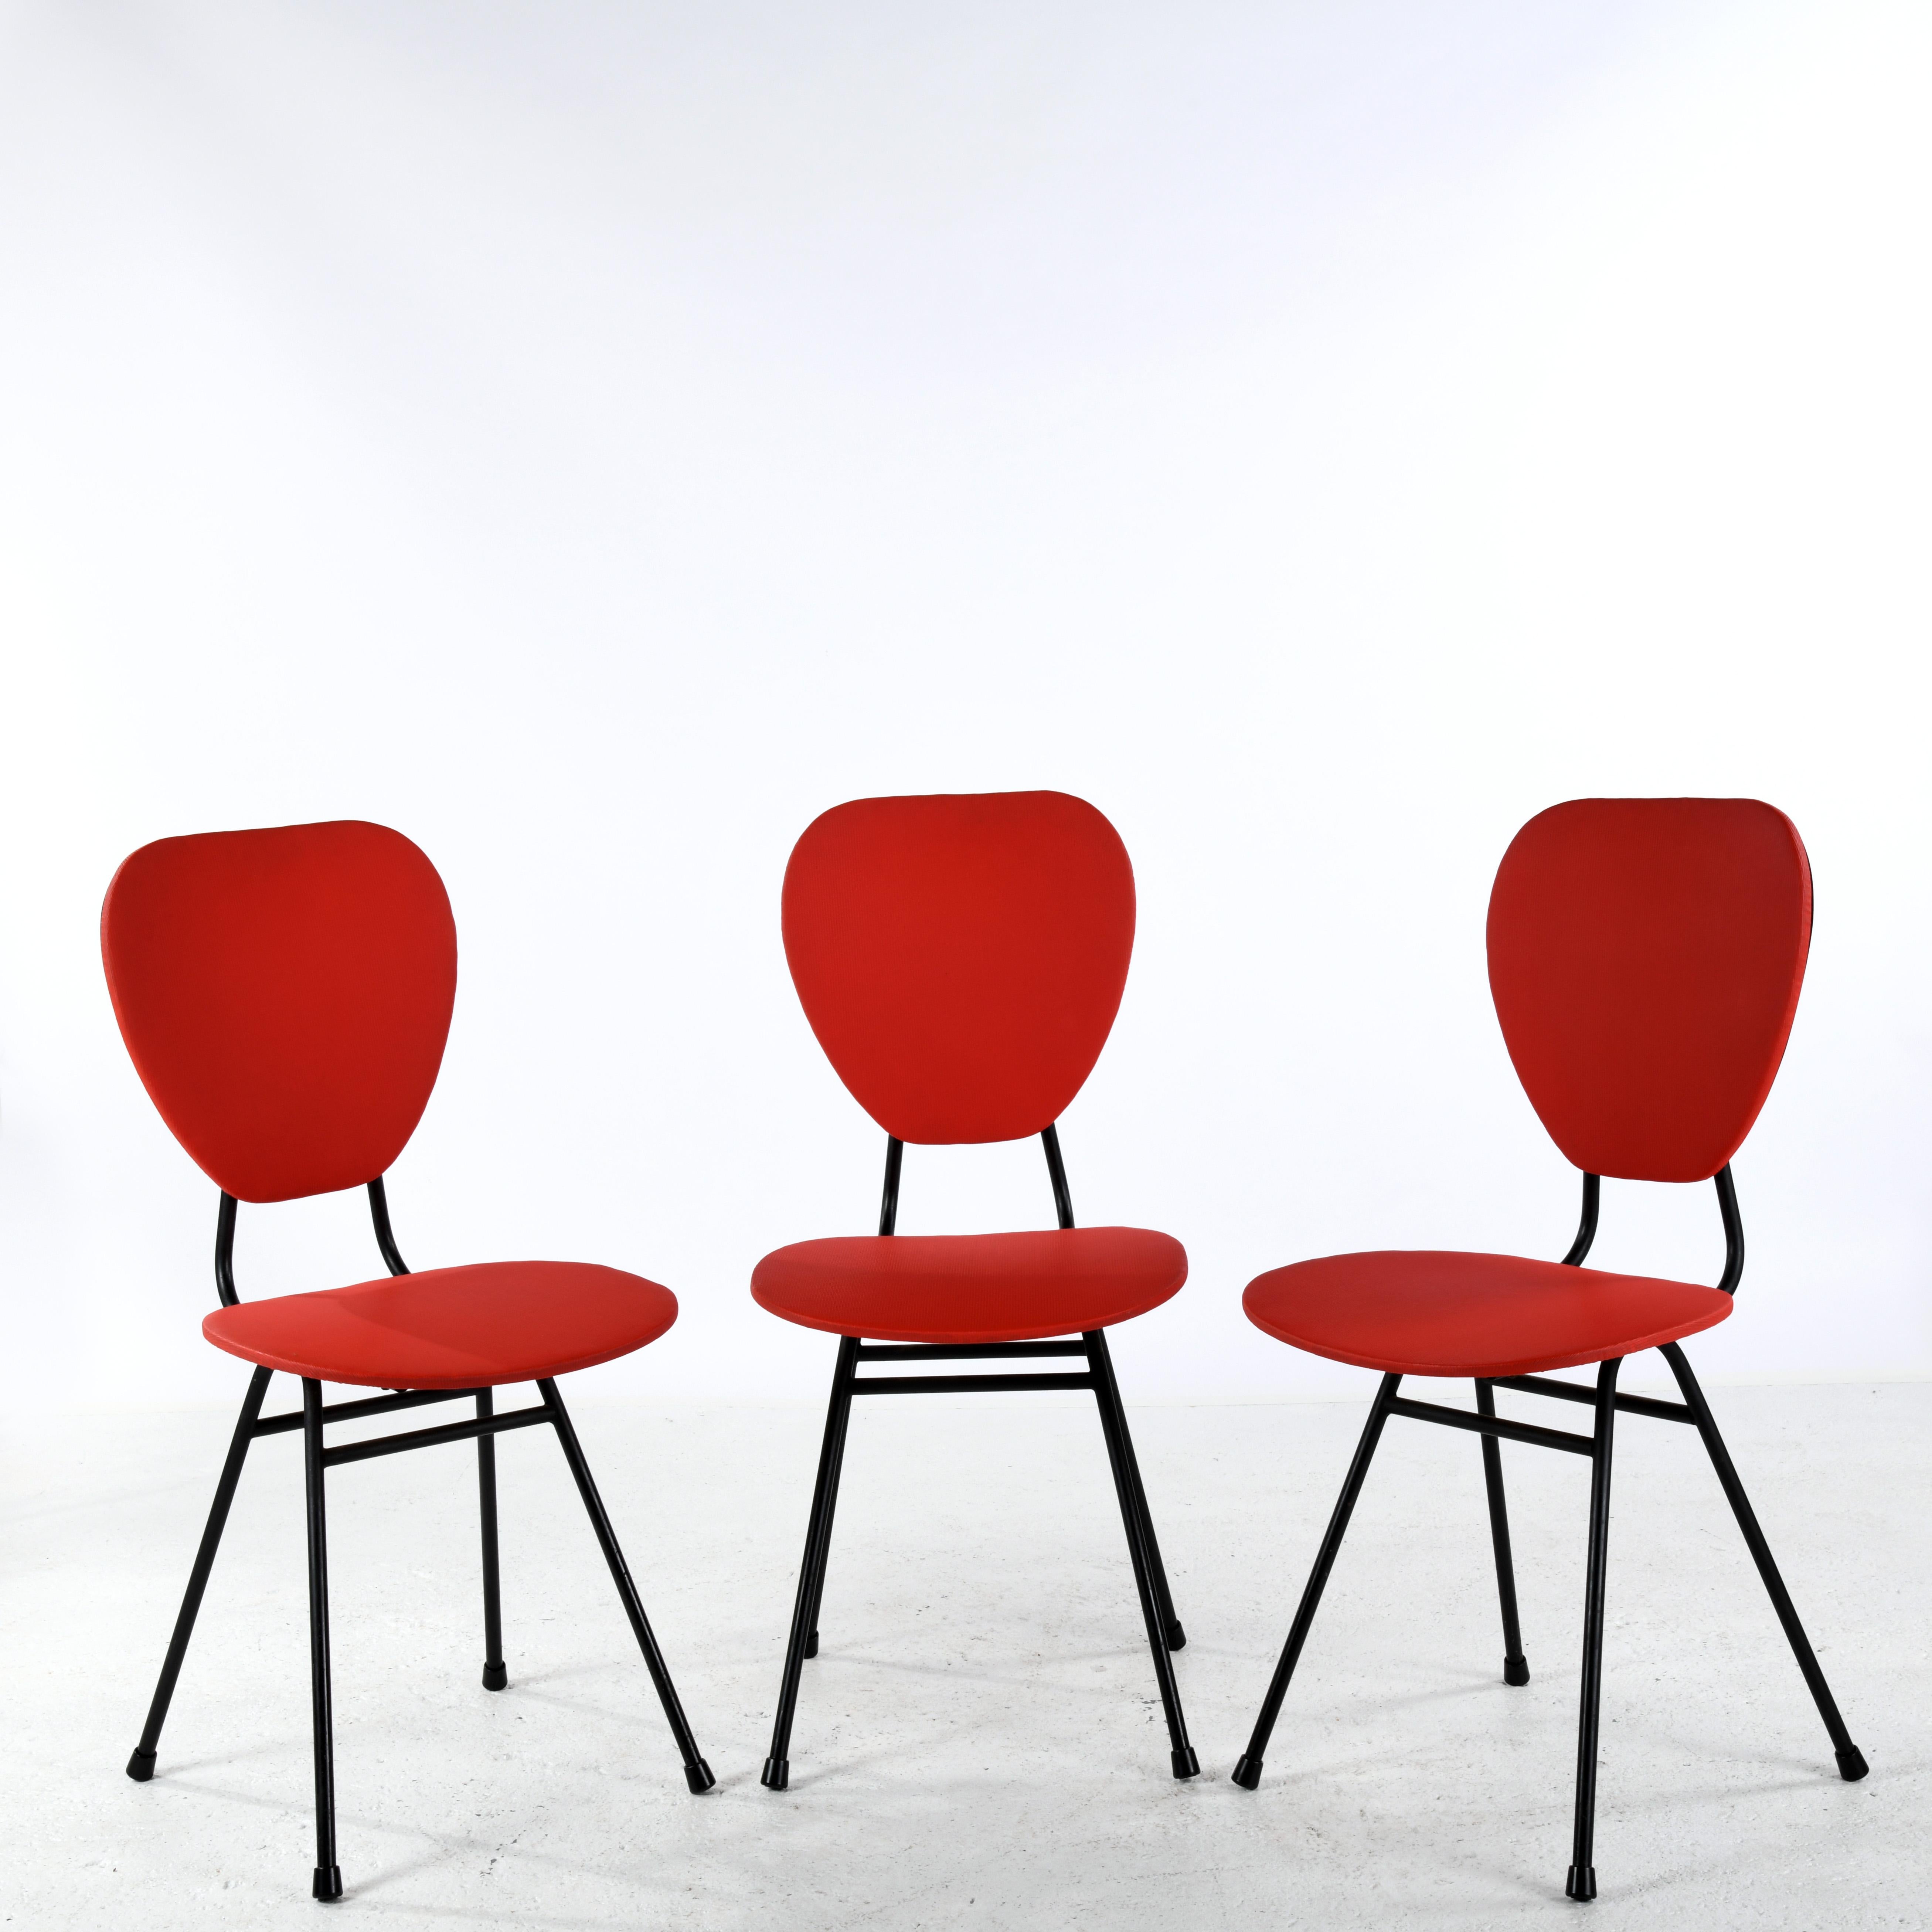 3 von Jacques Hitier in den 1950er Jahren entworfene Stühle, veröffentlicht von Tubauto. Struktur aus lackiertem Stahl, Sitze und Rückenlehnen aus Holz und Kunstleder. Sehr guter Zustand für ihr Alter! Sehr leichte Gebrauchsspuren, keine Kratzer